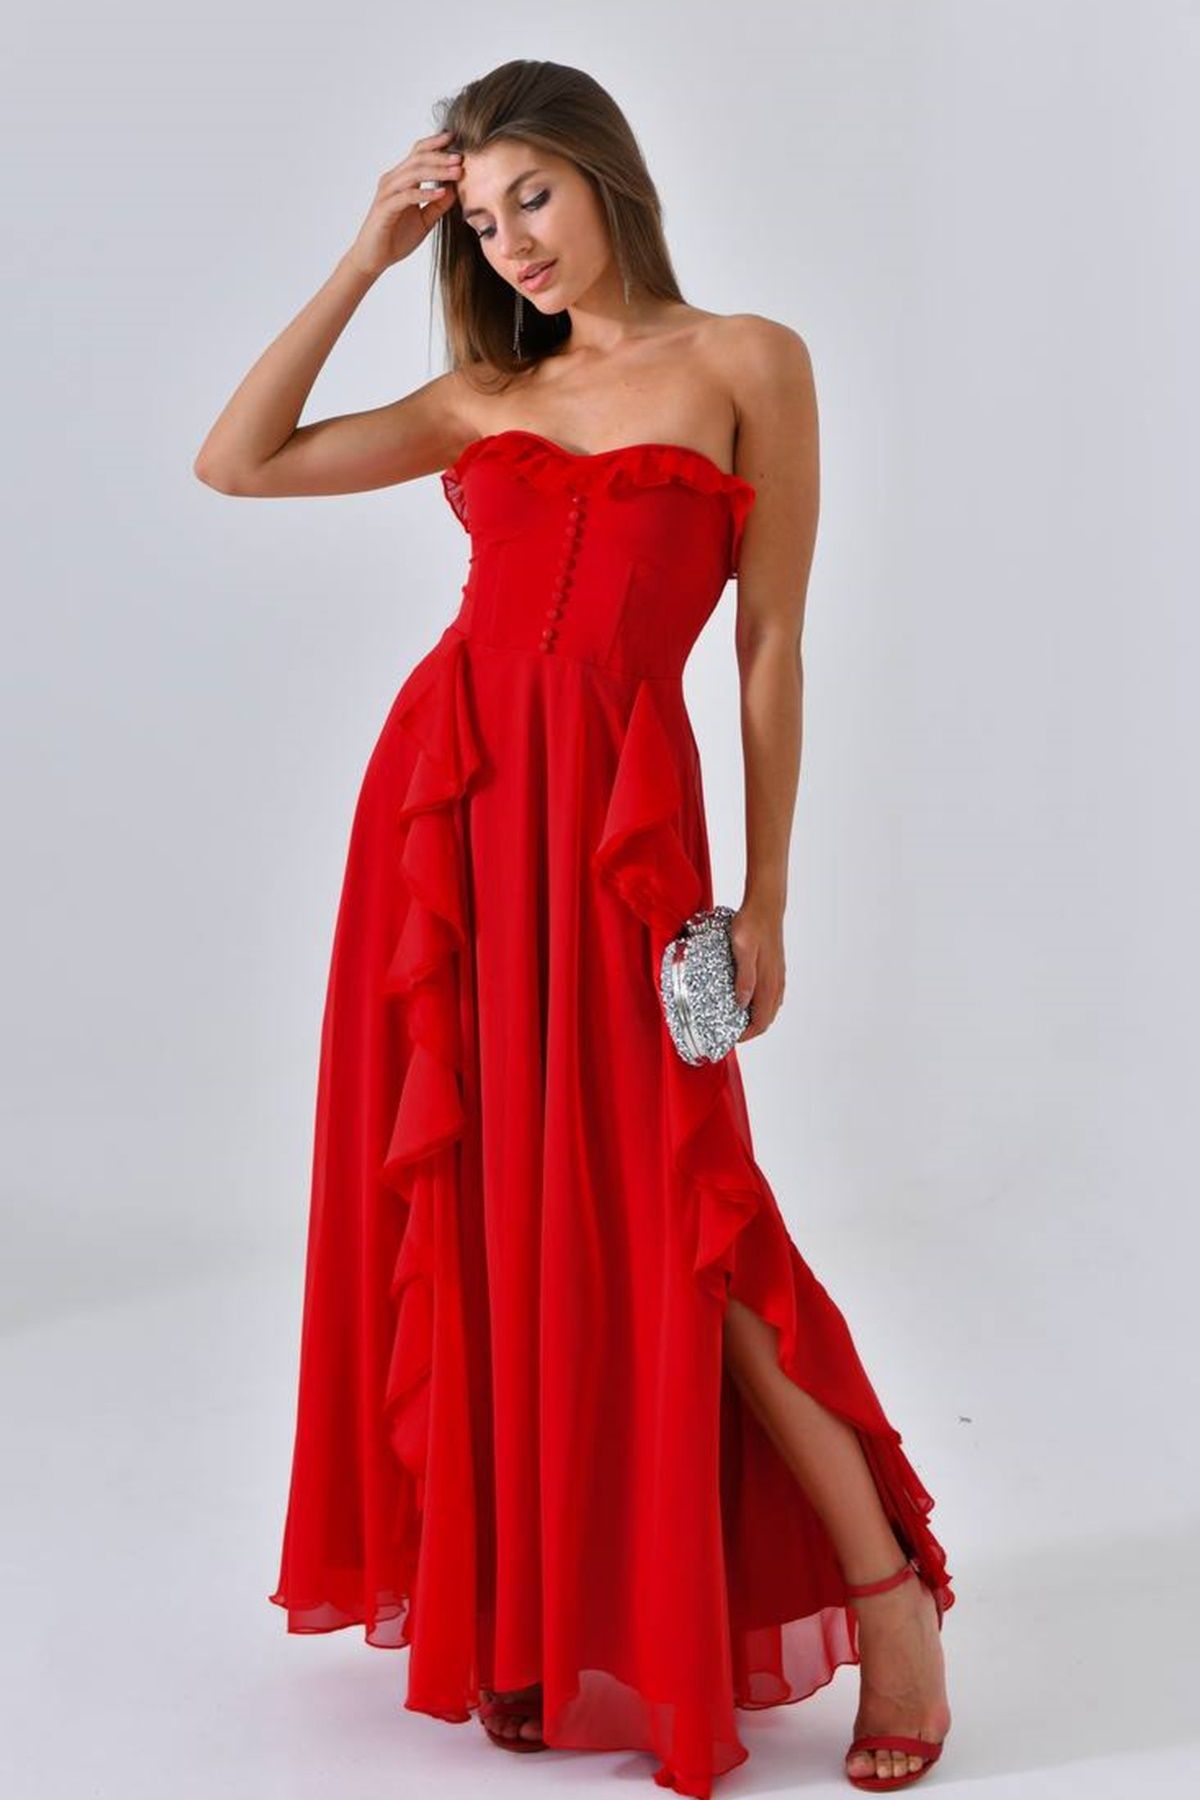 lovebox Kadın Şifon Kumaş Volan ve Yırtmaç Tasarım Straplez Yaka Kırmızı Maxi Abiye Elbise 9329